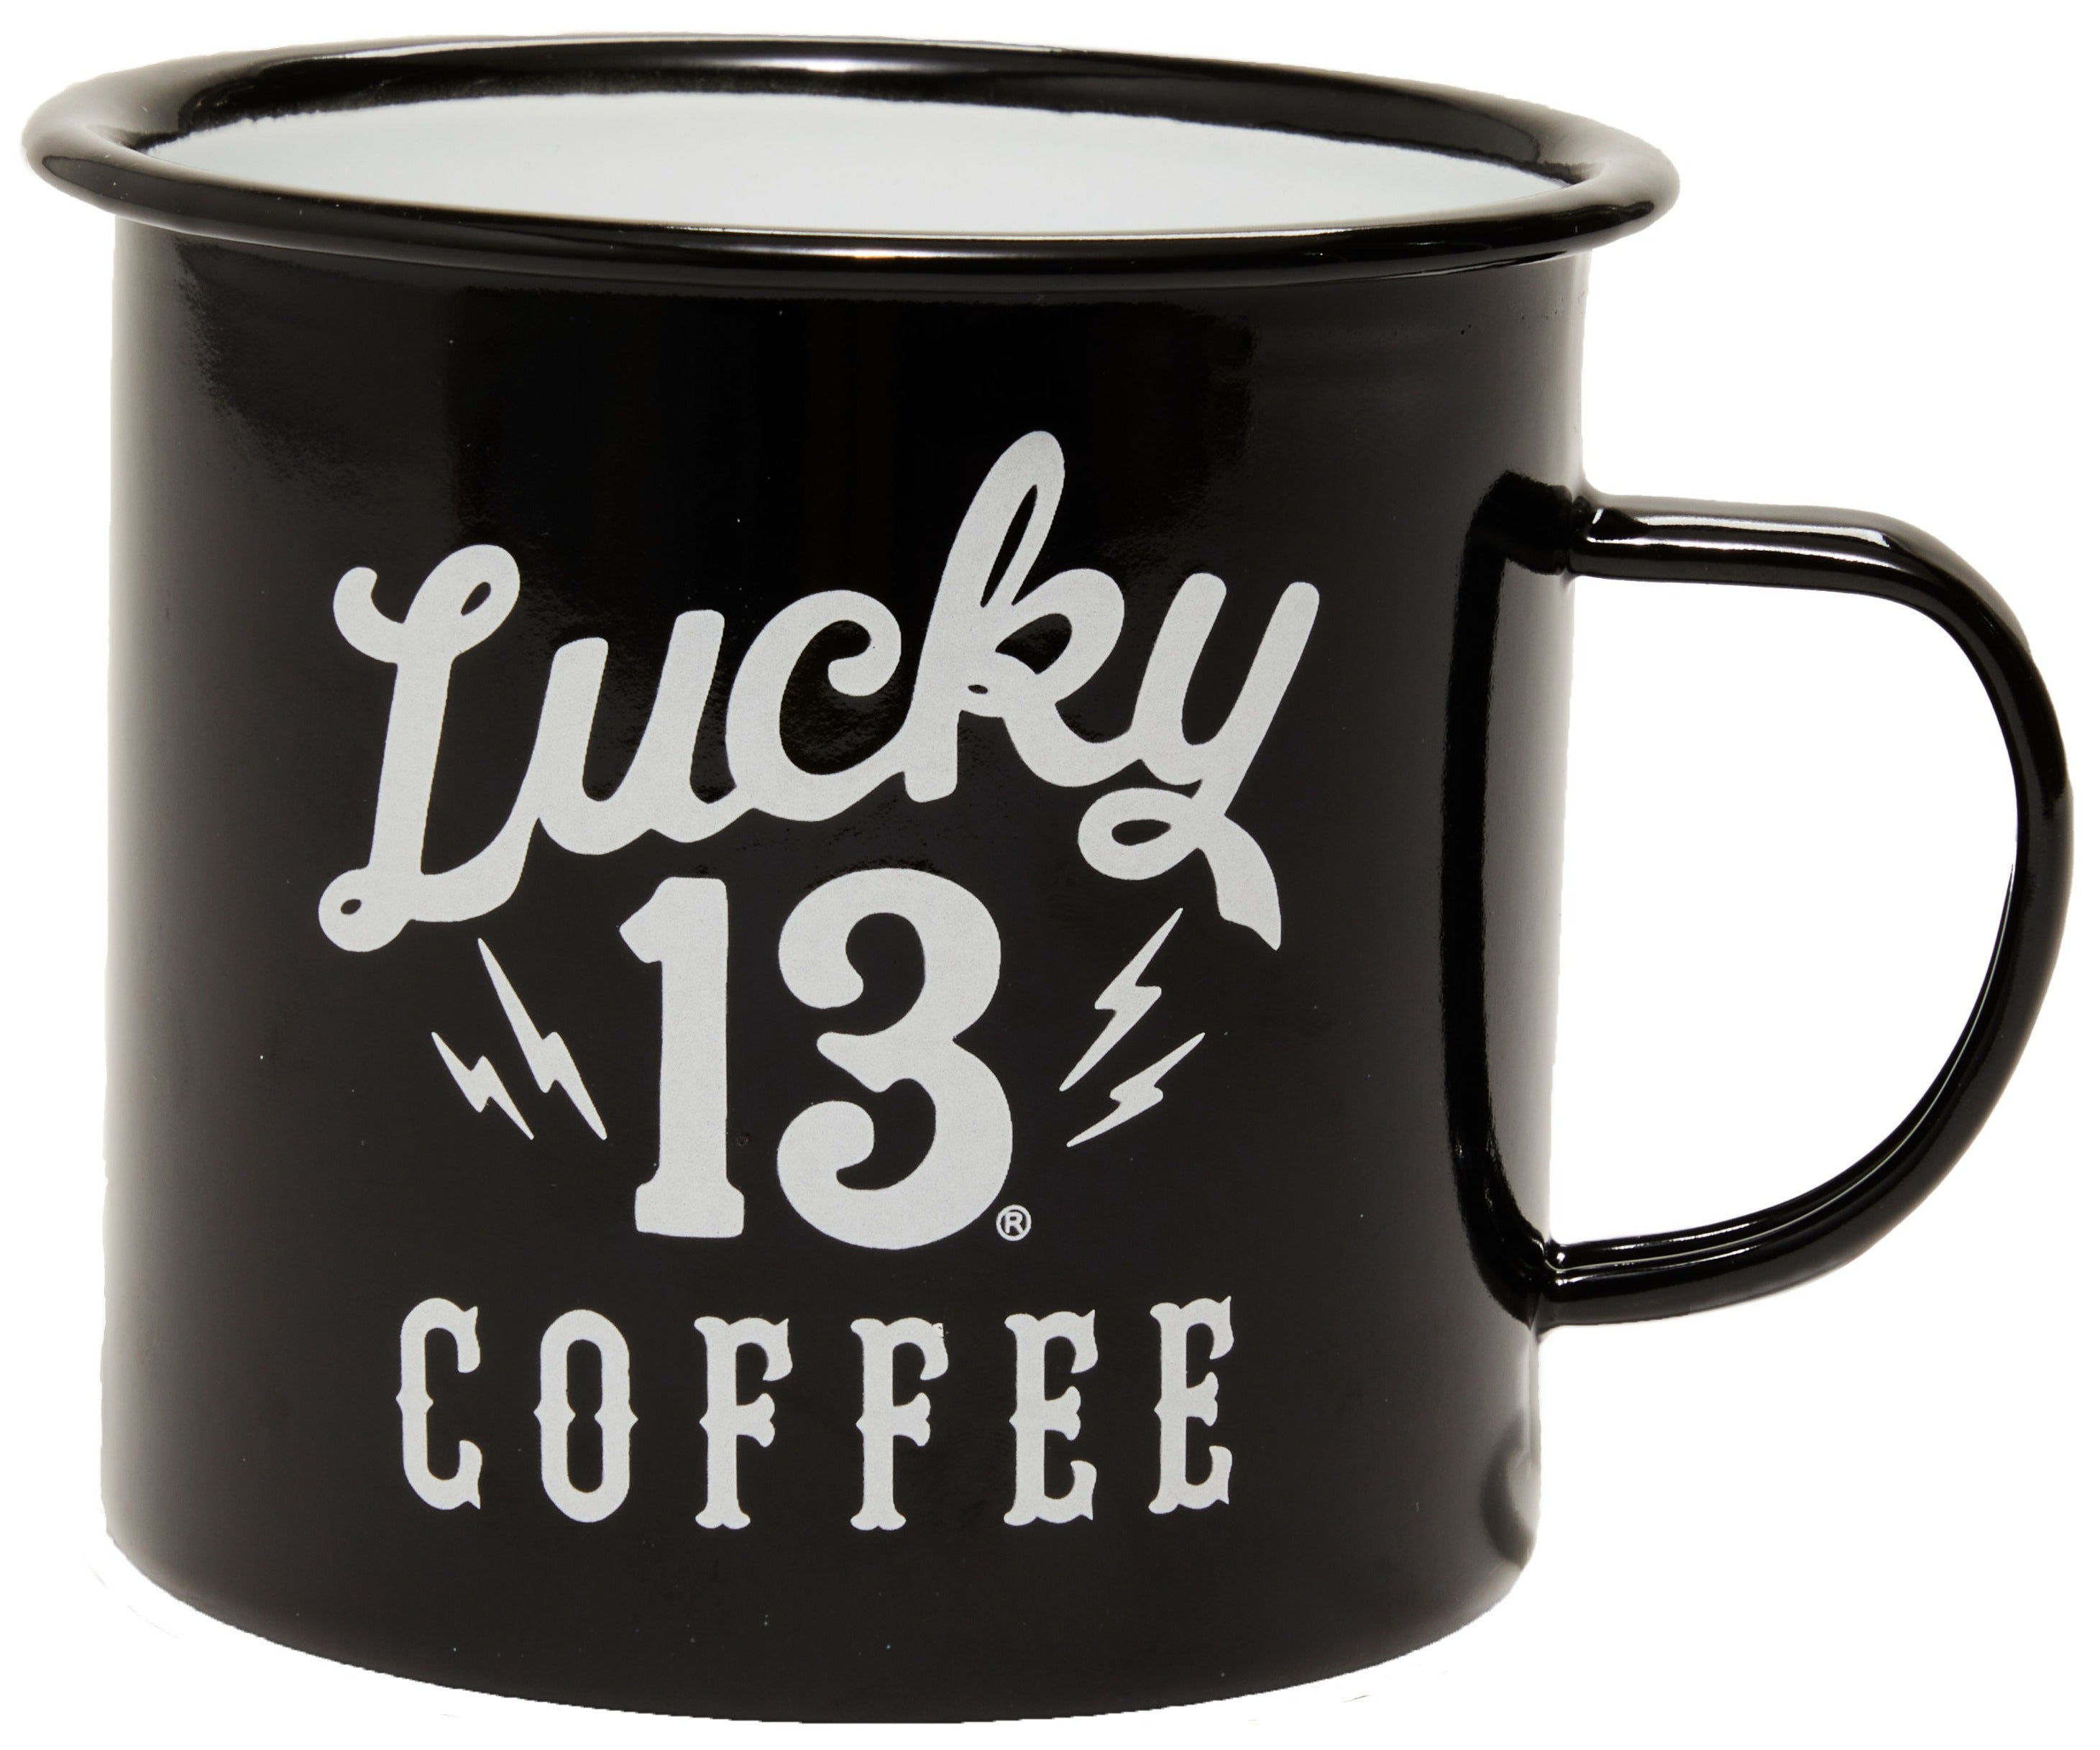 LUCKY 13 COFFEE MUG - SHOCKER LOGO 24 oz Black – L13 Coffee